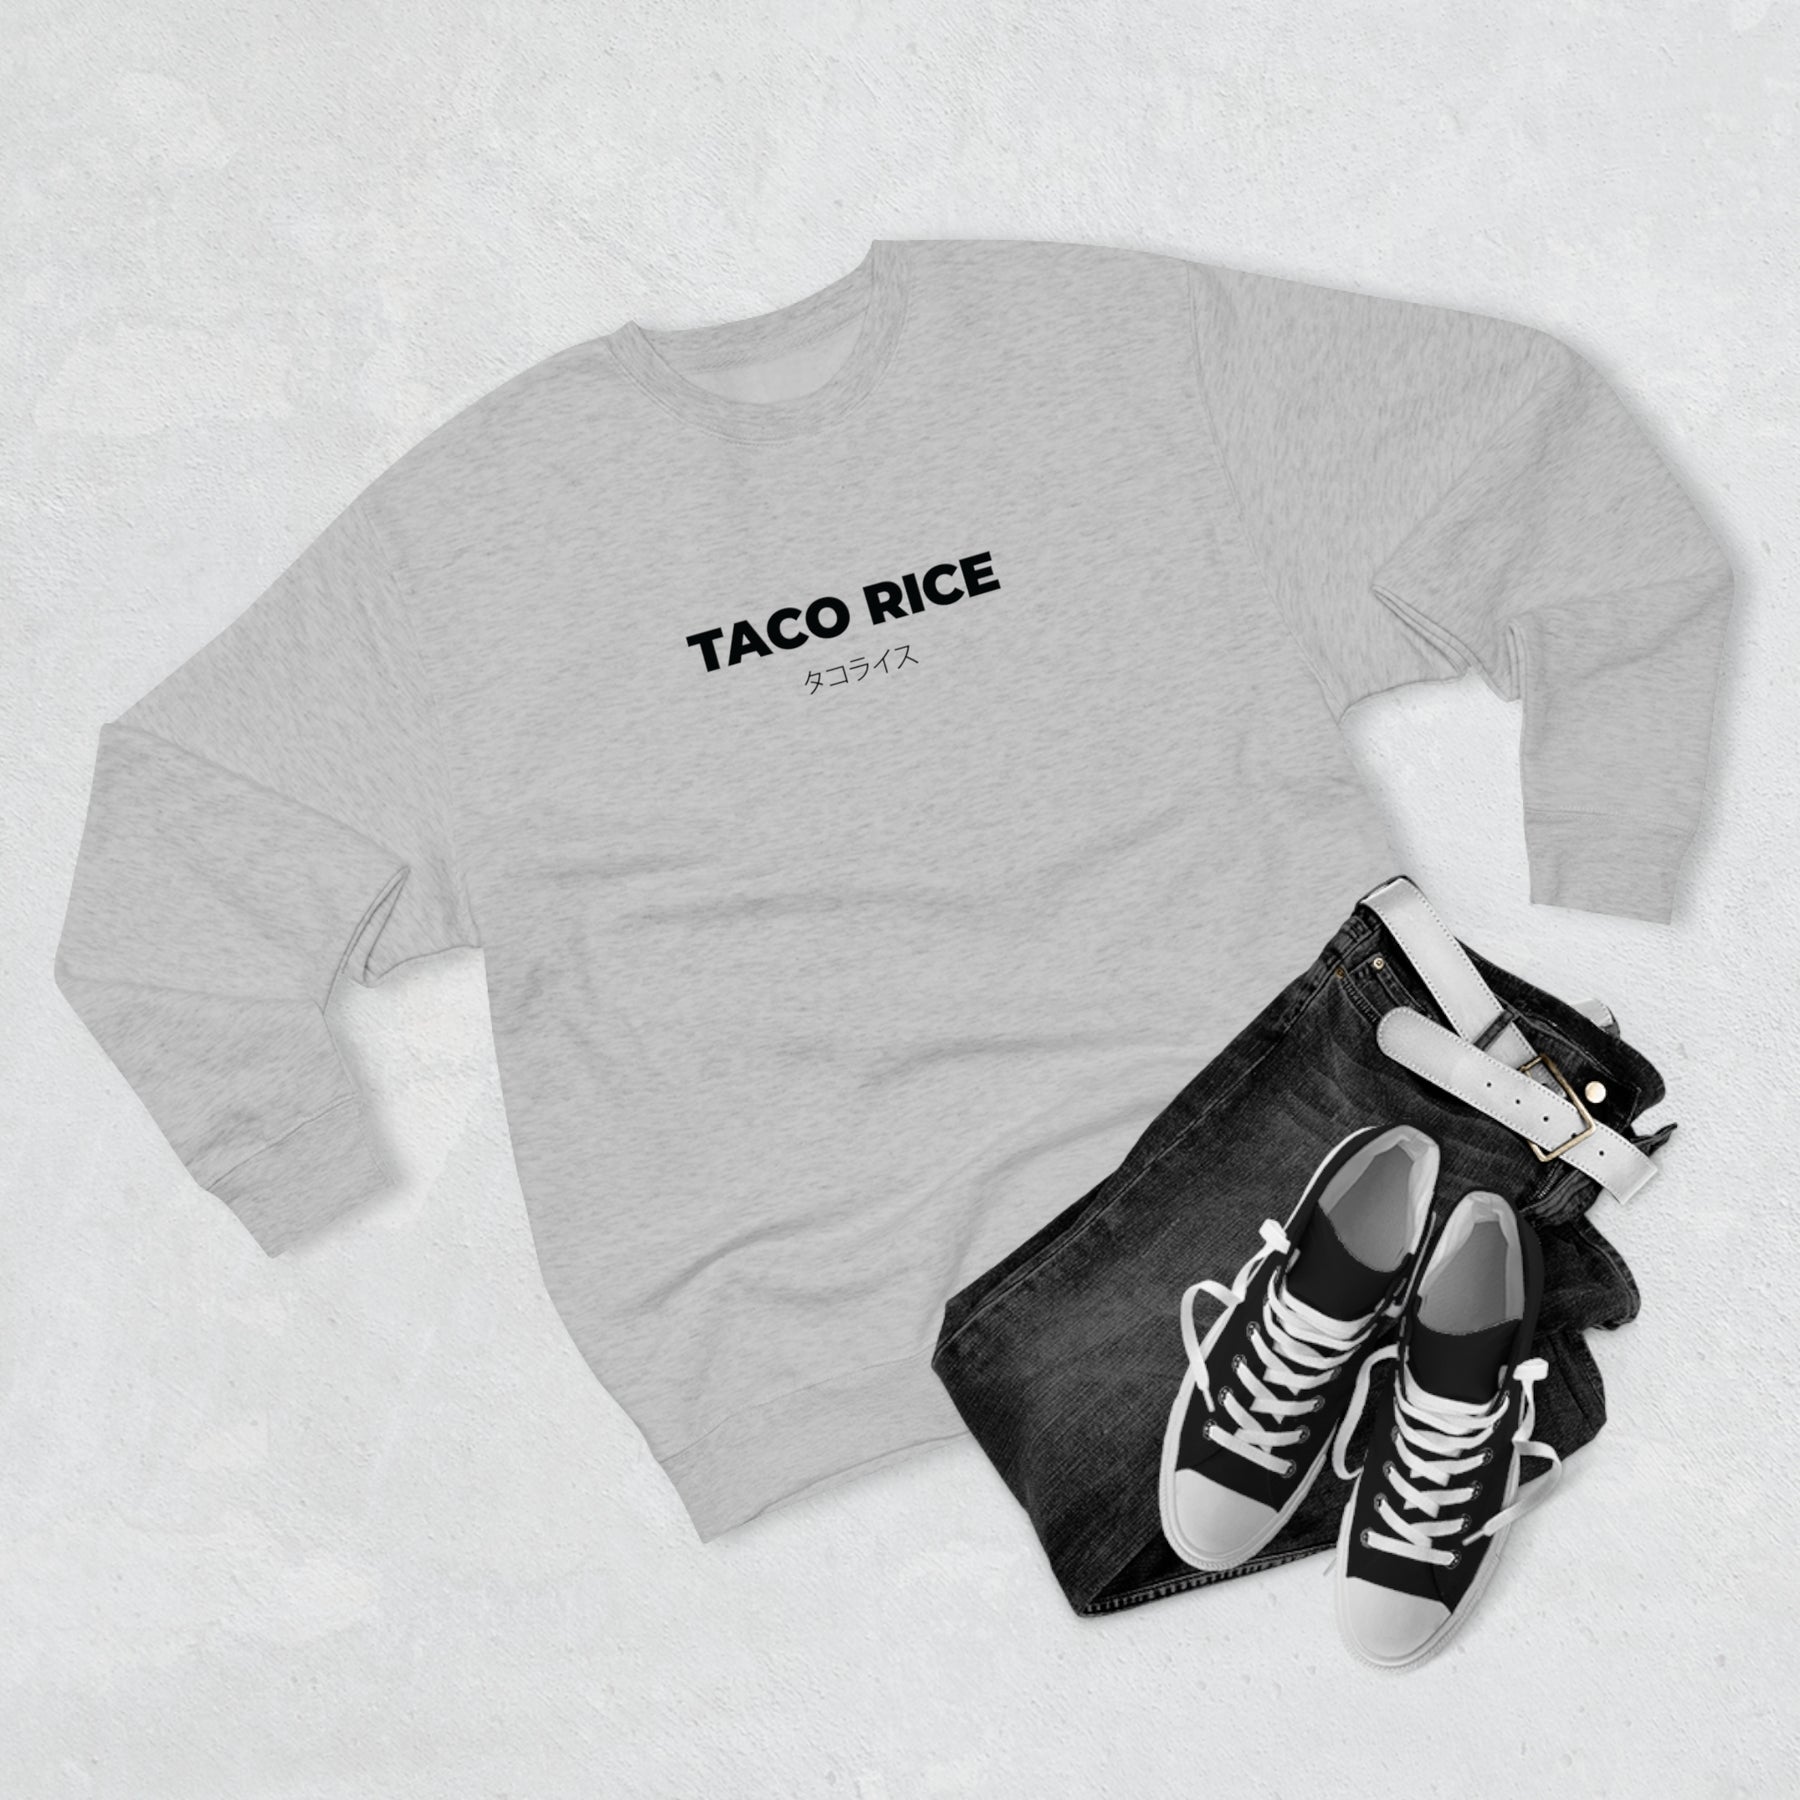 TACO RICE - Sweatshirt